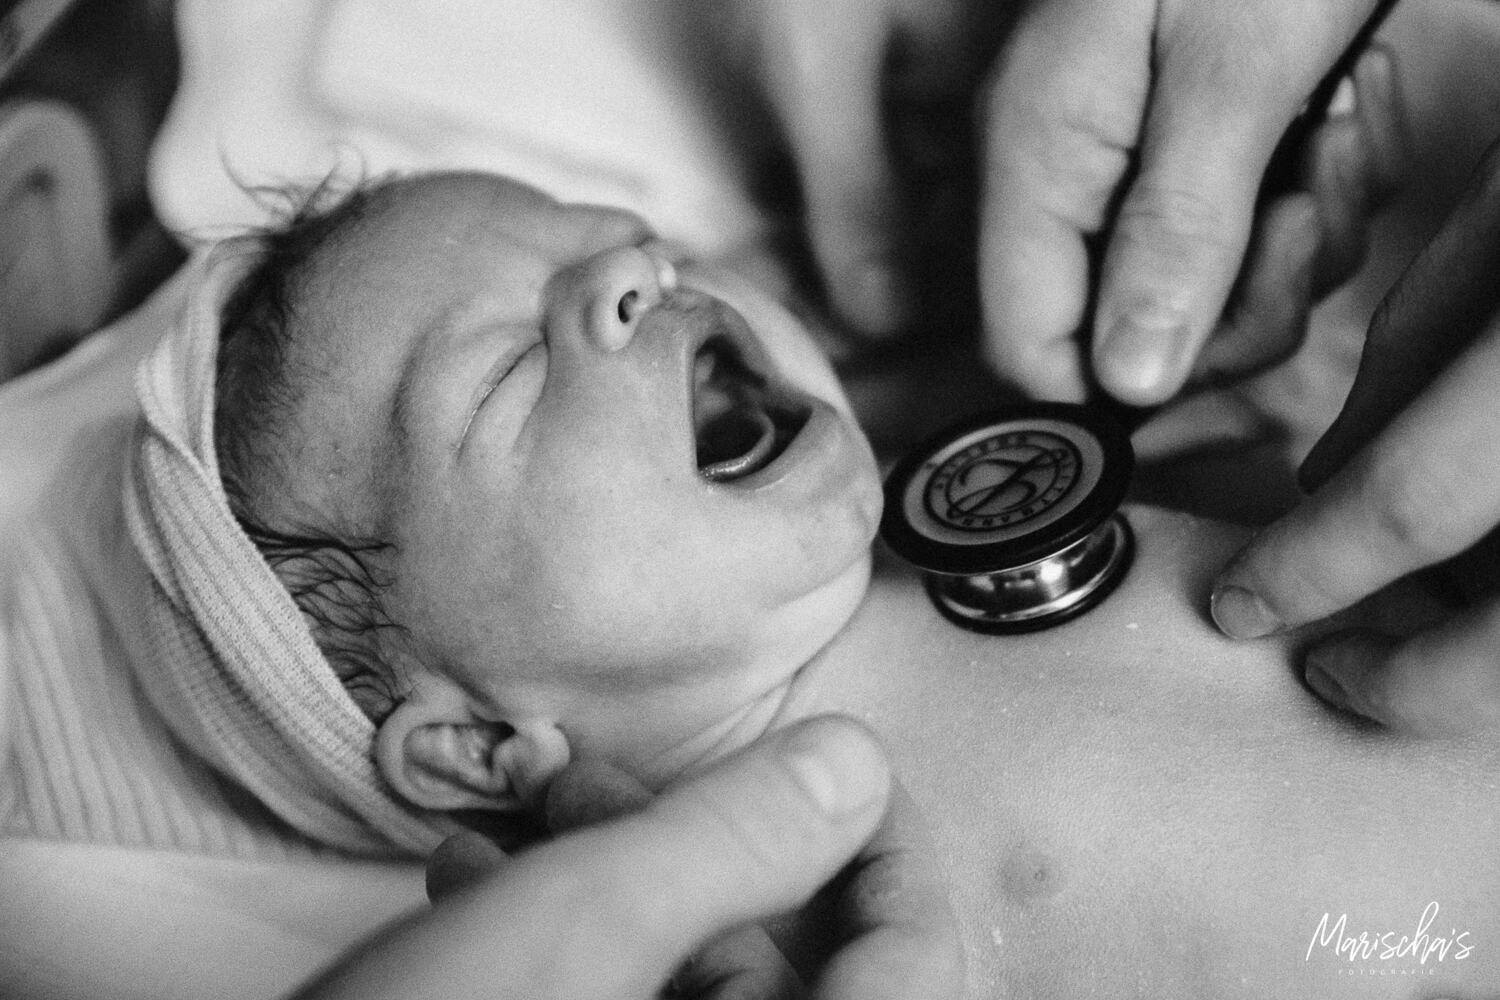 bevallingsfotograaf voor een badbevalling in het geboortecentrum zuyderland